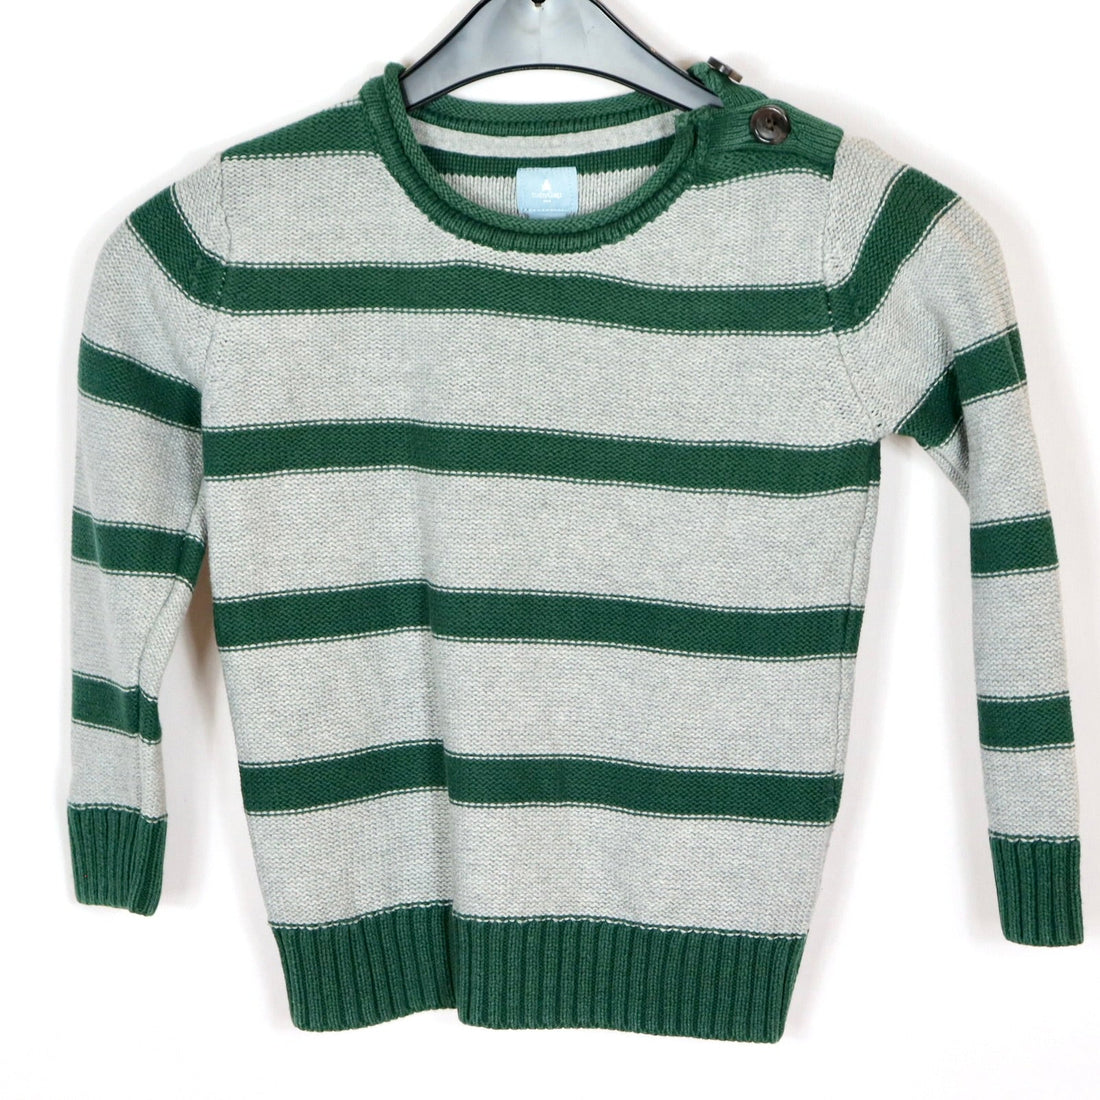 Pullover - GAP - Strickware - 98 - grau/grün - uni - Boy - sehr guter Zustand